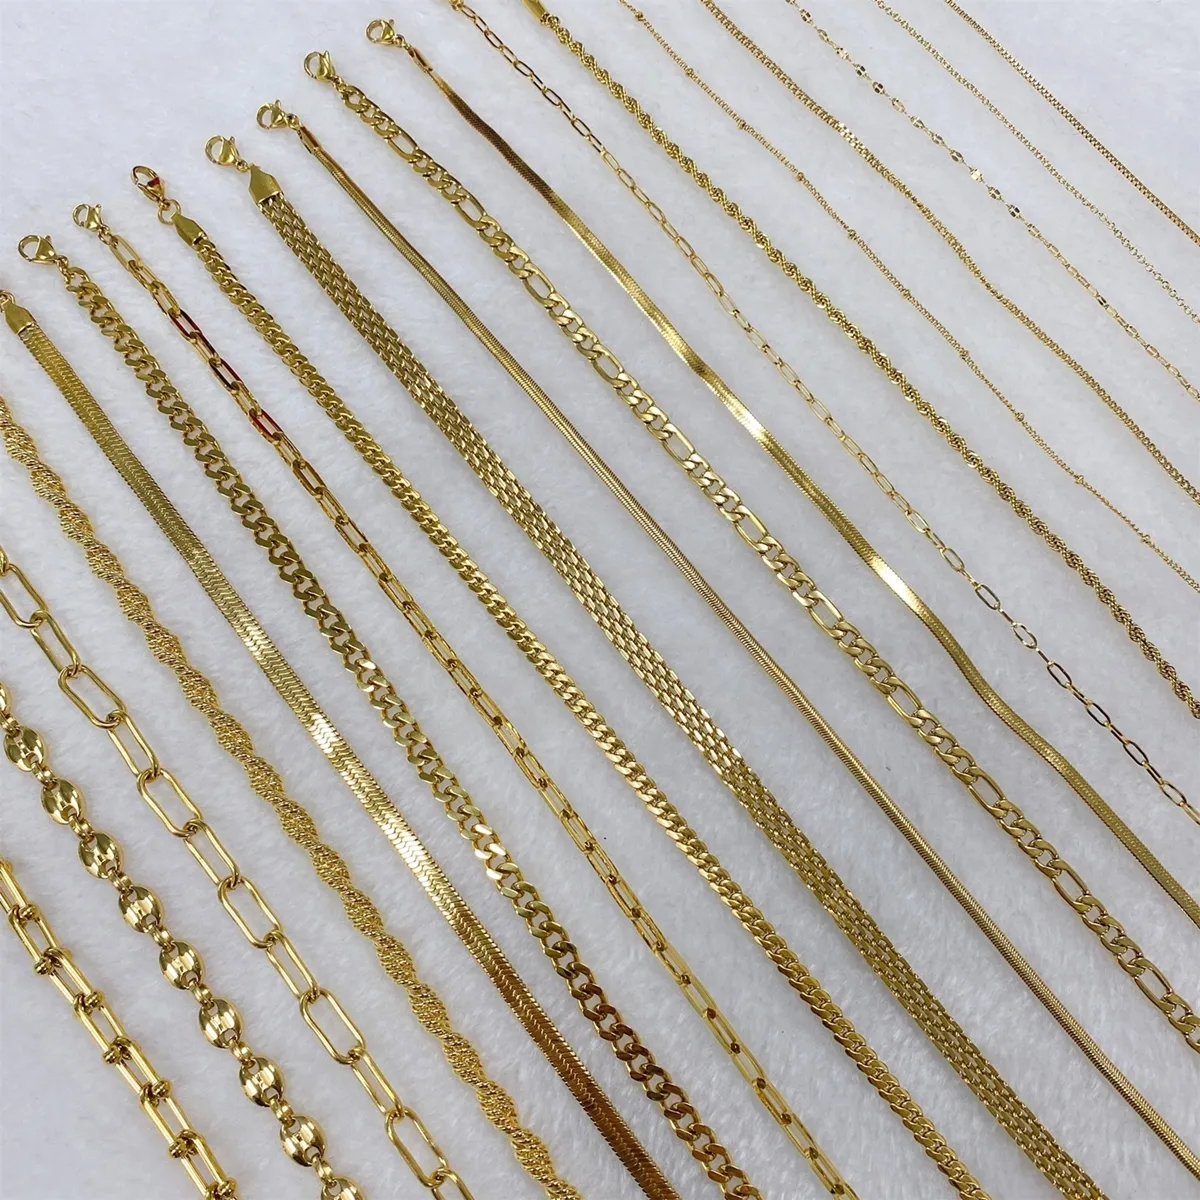 سلسلة كوبية من الفولاذ المقاوم للصدأ بجودة عالية ومجوهرات عيار 18 قيراطًا ذات حبل مرصع بالذهب عيار 18 على شكل ثعبان فيجارو للرجال والنساء